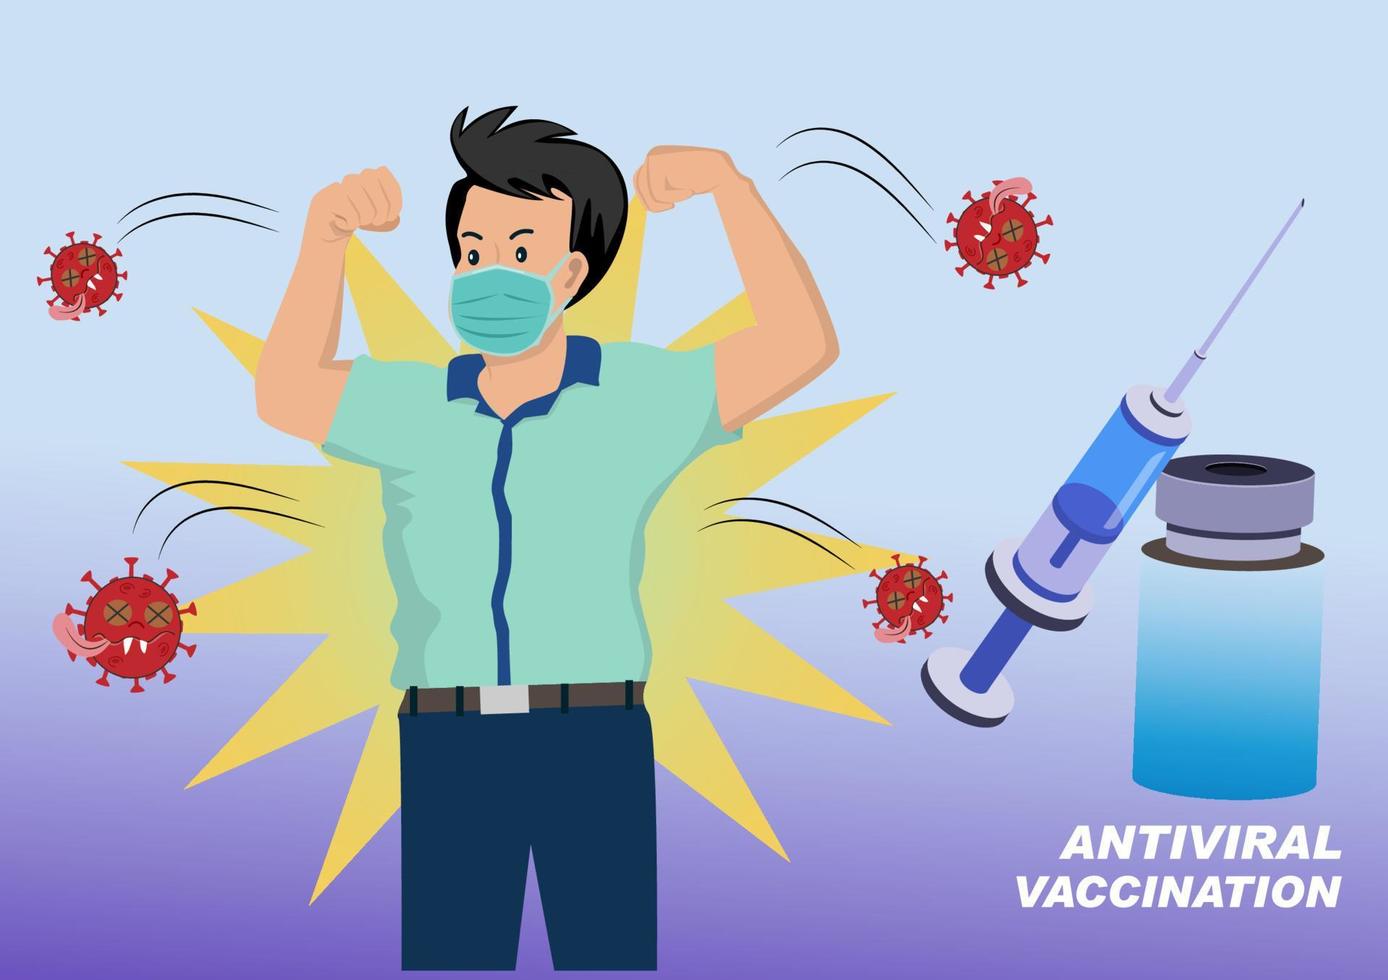 menschen oder menschen bekämpfen die rote corona oder covid-19, indem sie einen impfstoff gegen den ausbruch bekommen. Cartoon-Illustrationsvektor im flachen Stil vektor